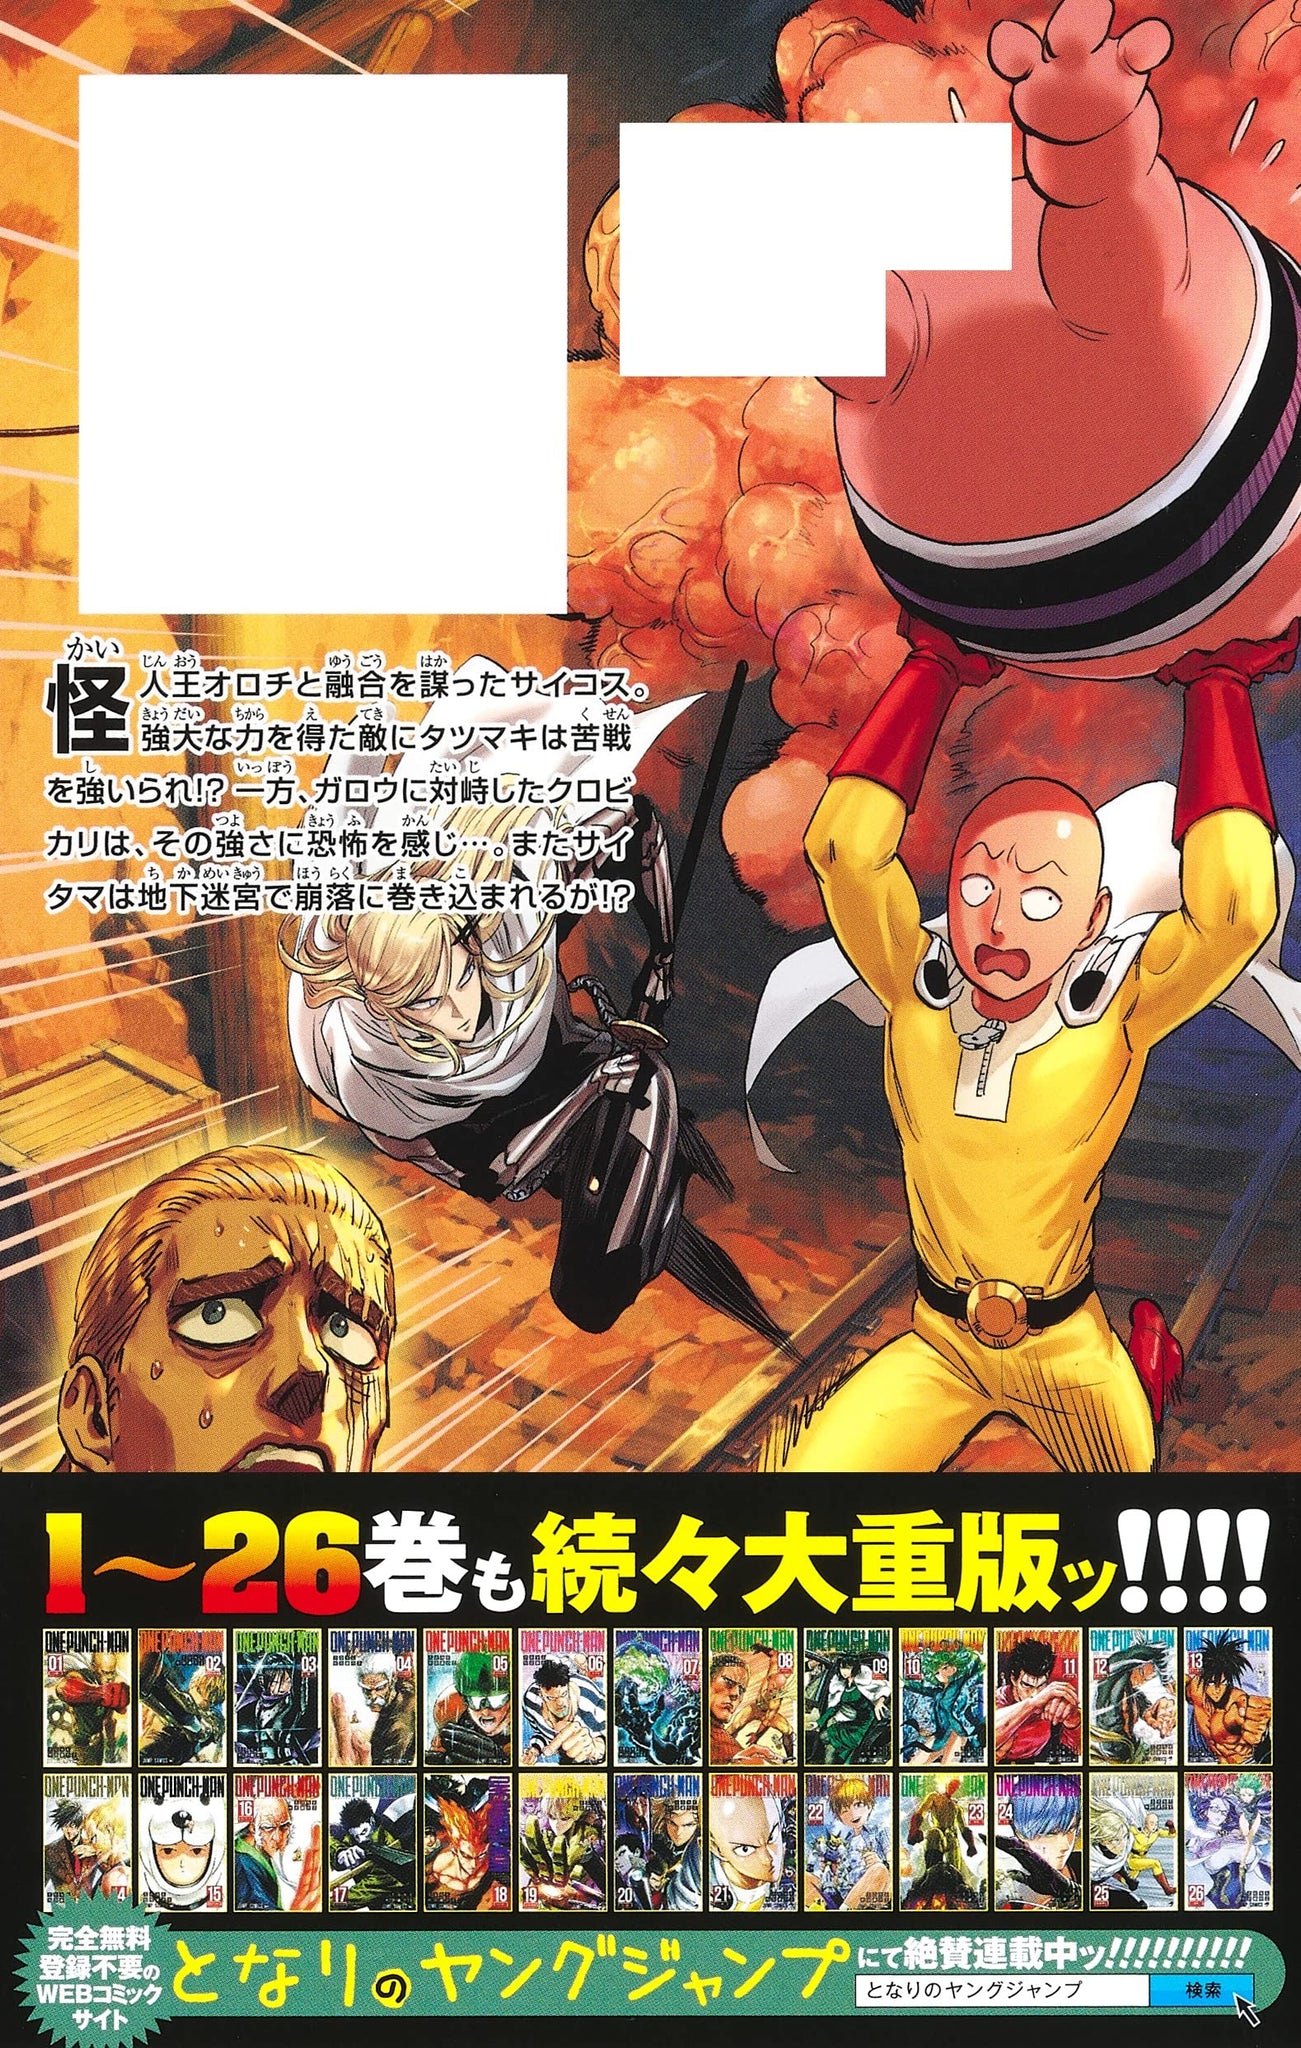 Kinokuniya USA - Japanese manga new releases! - One-Punch Man 26 - SAKAMOTO  DAYS 7 - Ayashimon 2 - Blue Box 5 and more! Be sure to keep up with  Japanese manga